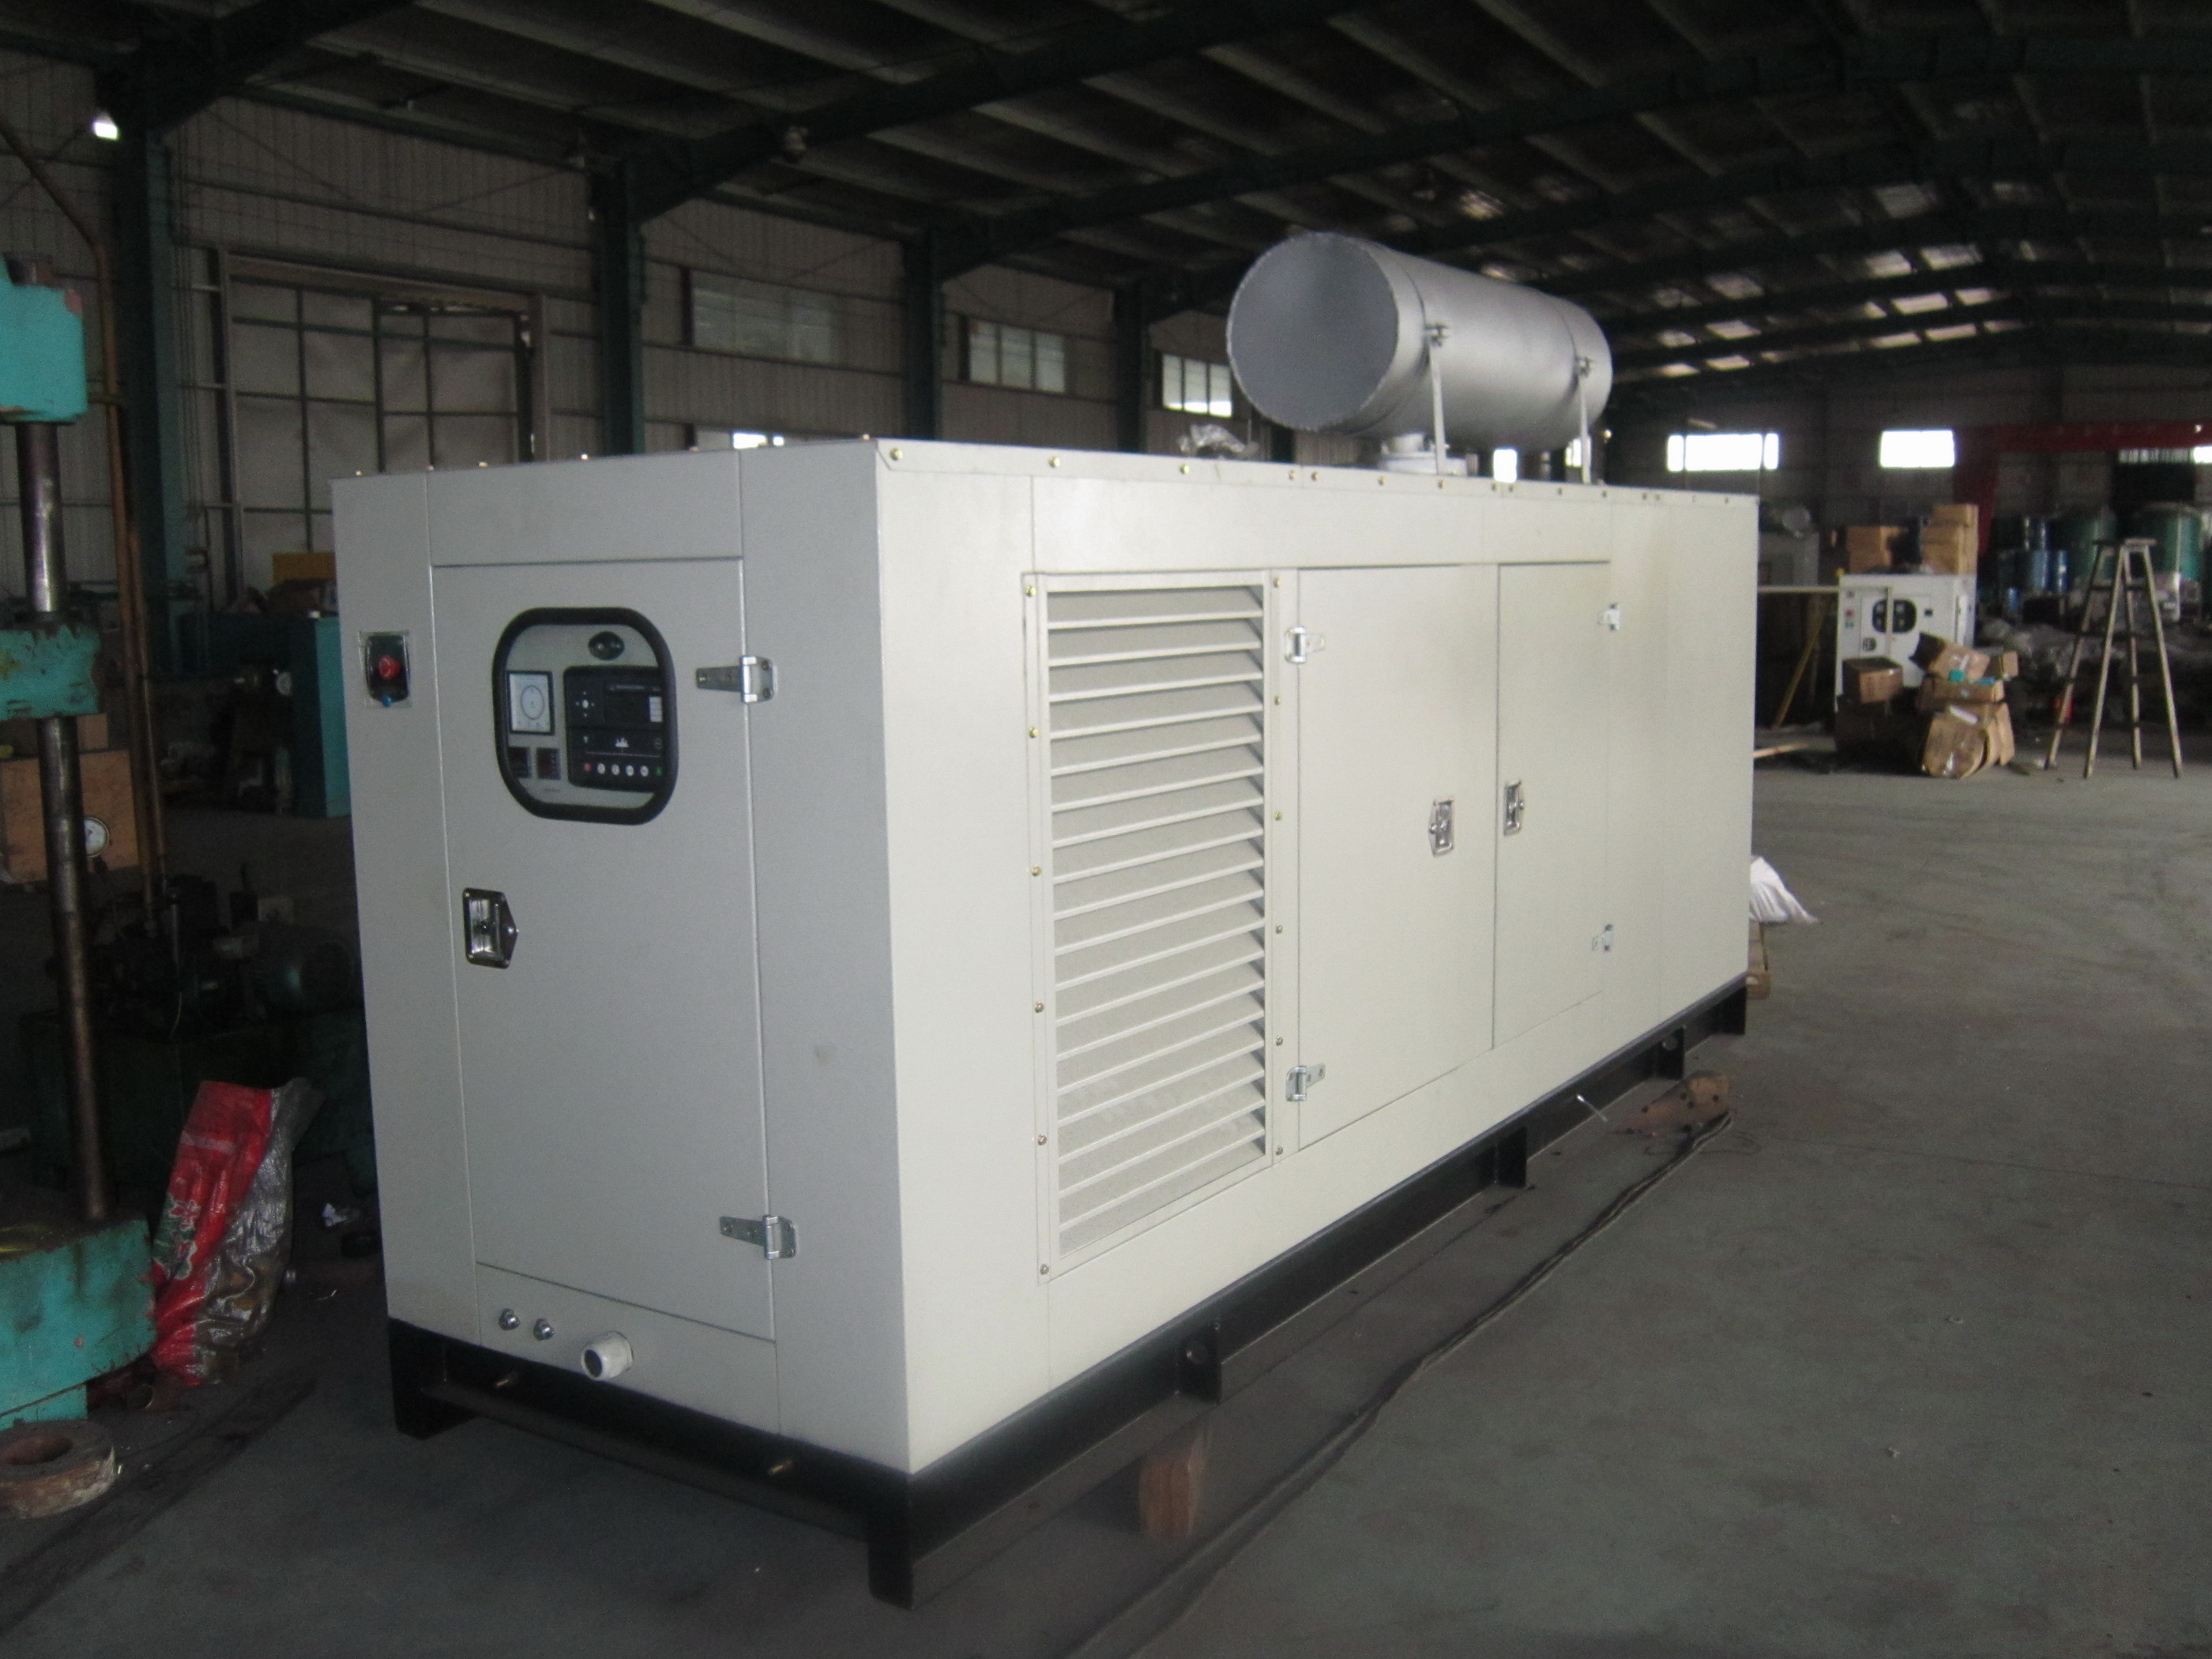  Soundproof diesel generator with 600kVA, Deutz engine marathon alternator 1800rpm at 60Hz Manufactures